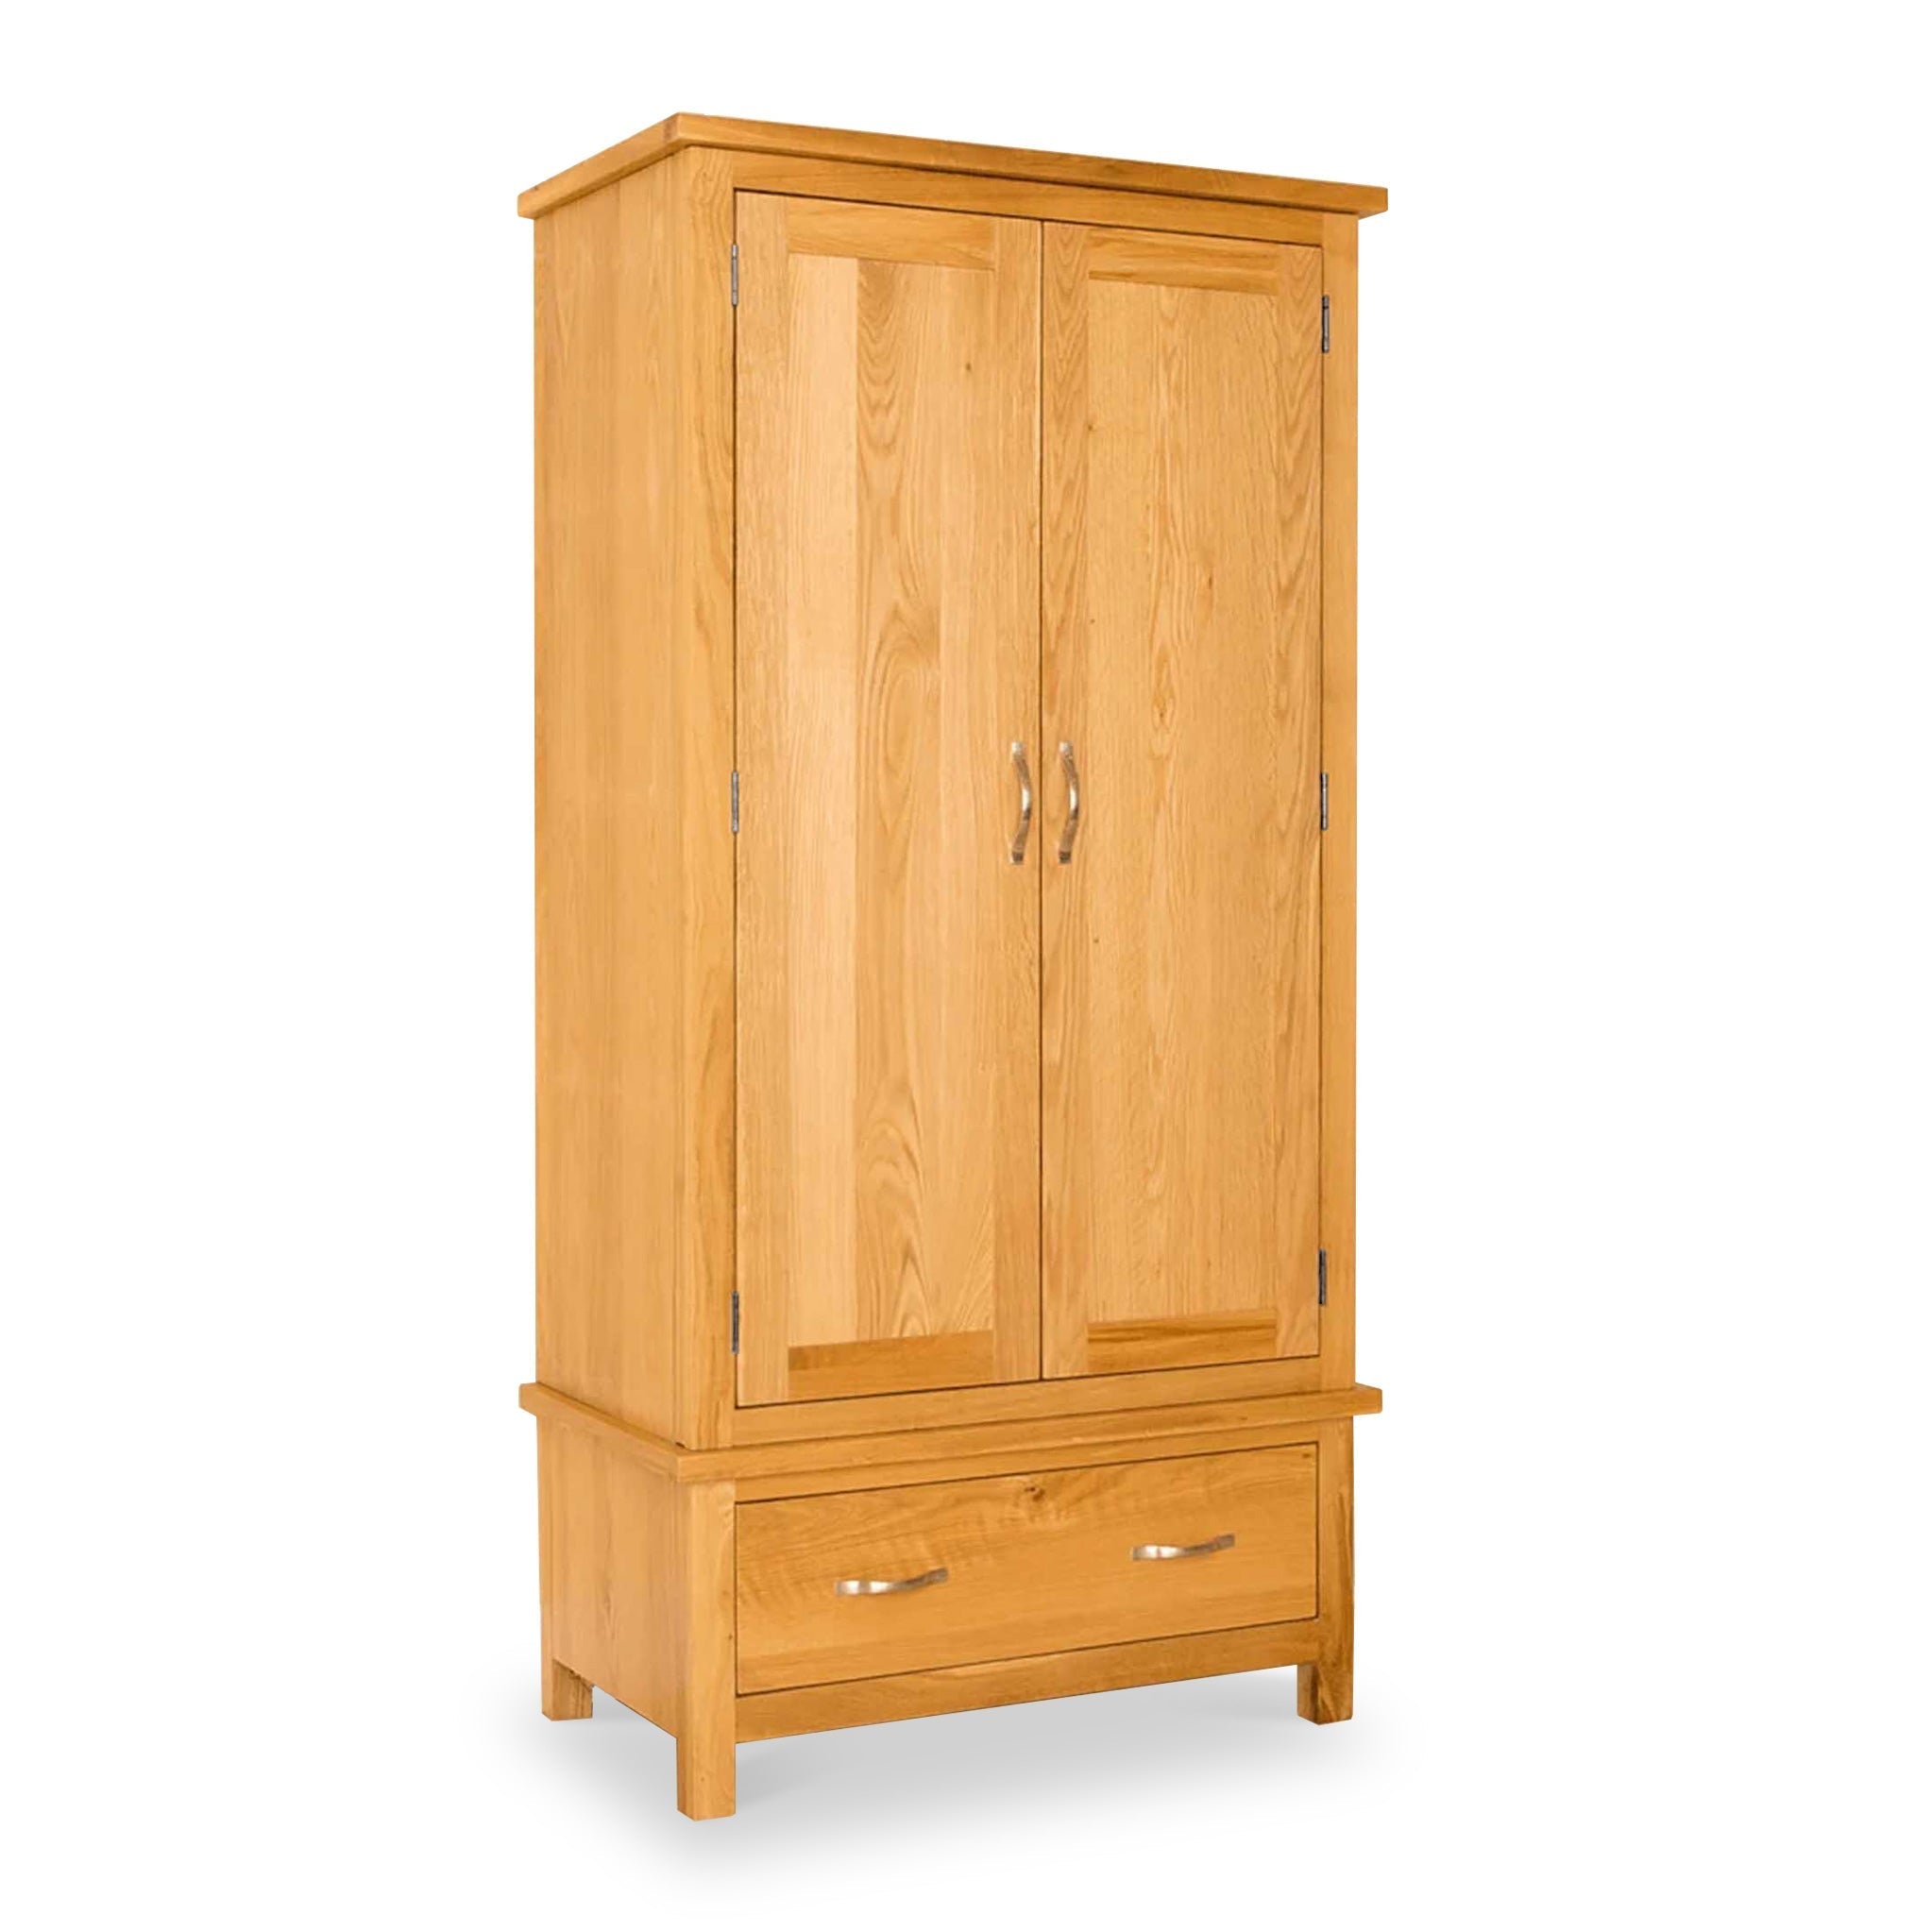 Newlyn Oak Double Wardrobe With Drawer Storage Light Oak